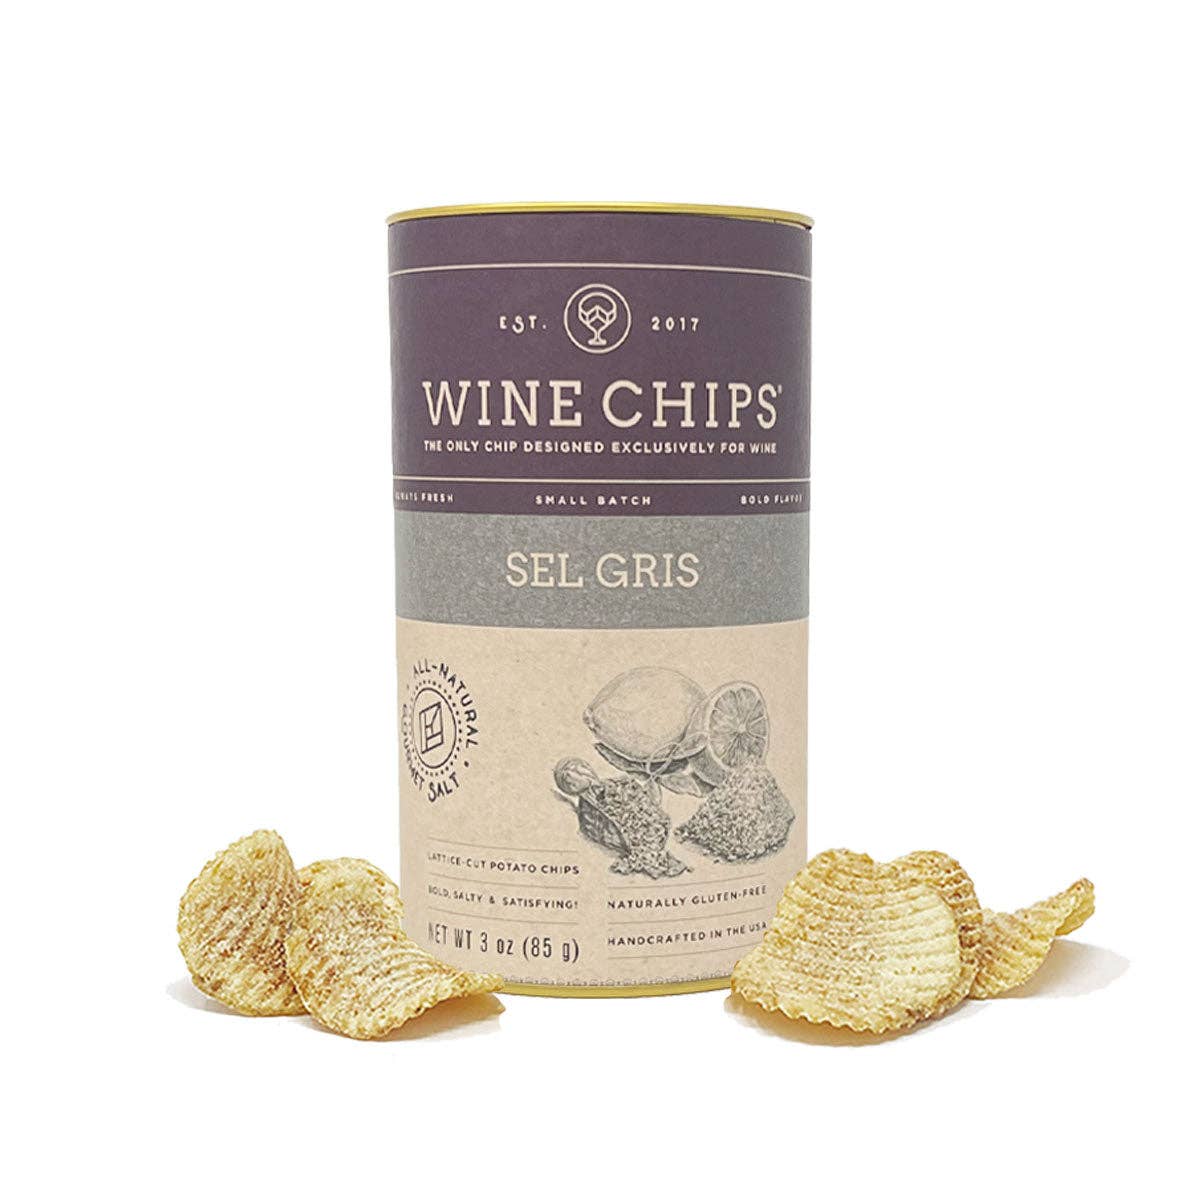 Wine Chips 3oz - Set Gris